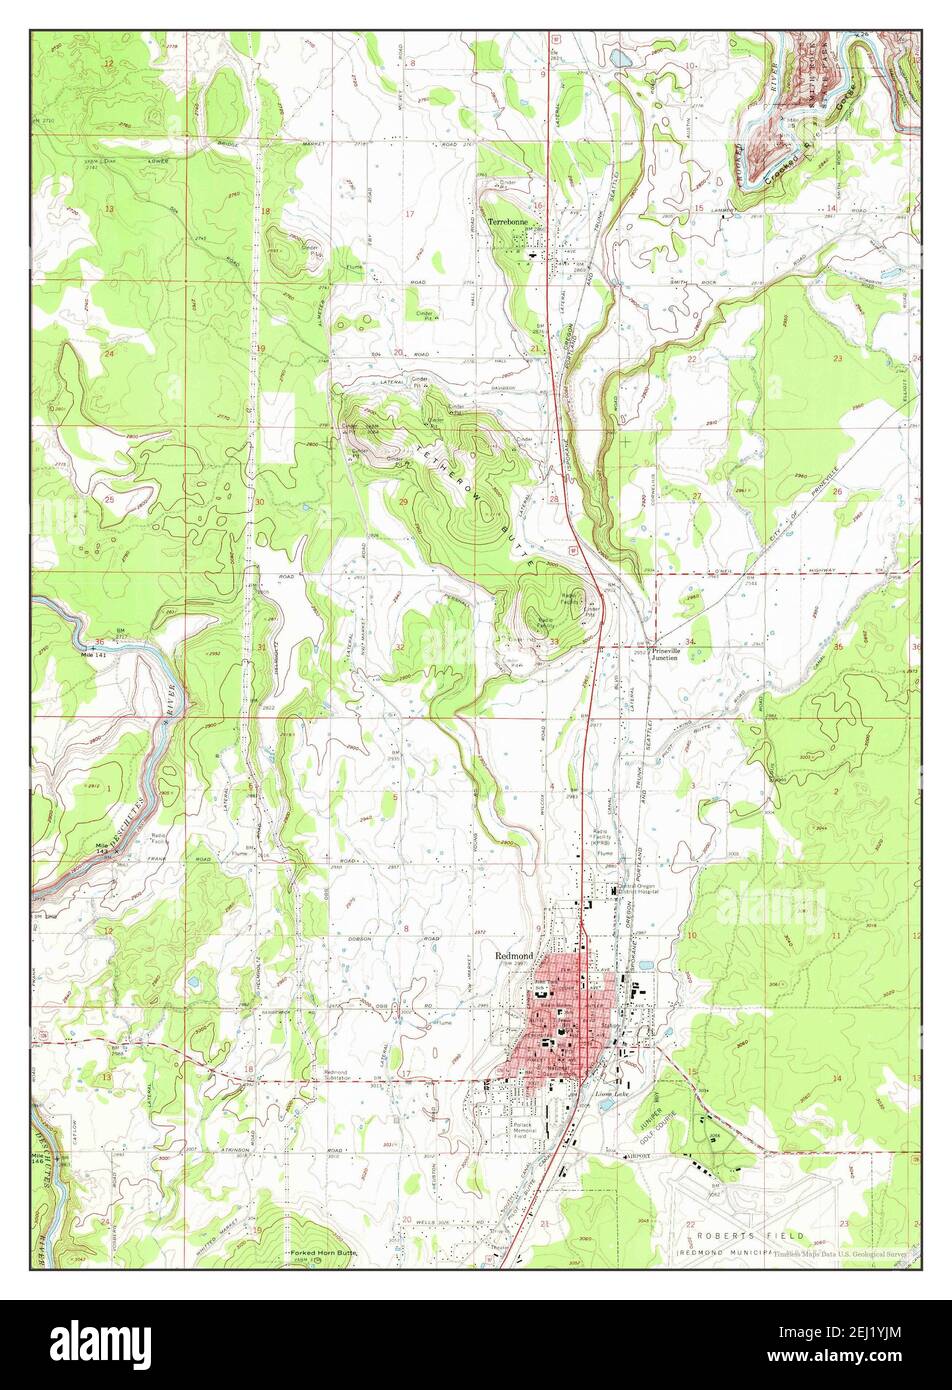 Redmond Oregon Map 1962 1 24000 Estados Unidos De America Por Timeless Maps Data U S Geological Survey 2ej1yjm 